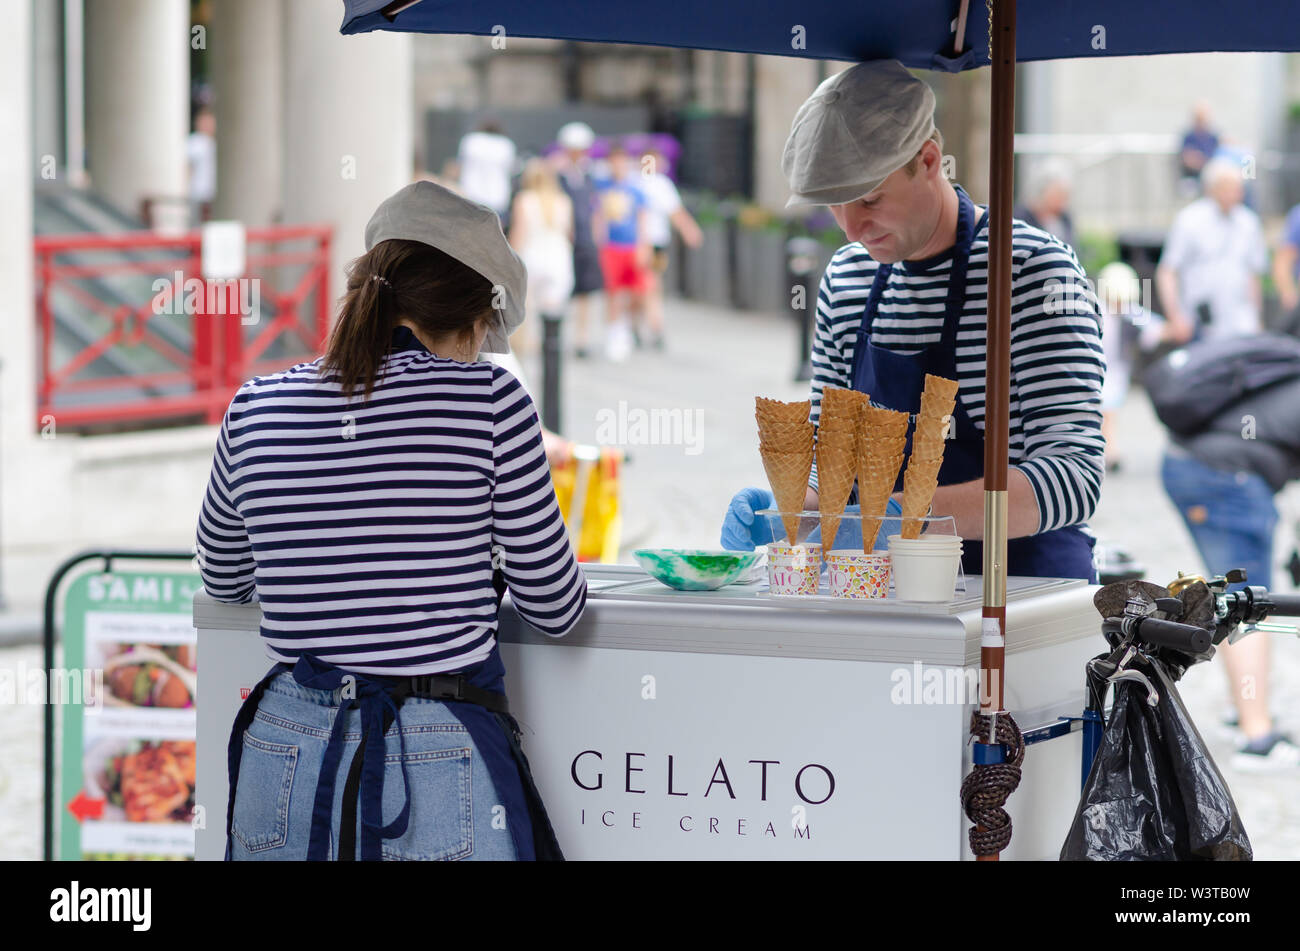 Junge Mädchen und ein Mann verkaufen Gelato Speiseeis in der London Street, in der Nähe der Tower Bridge. Stockfoto